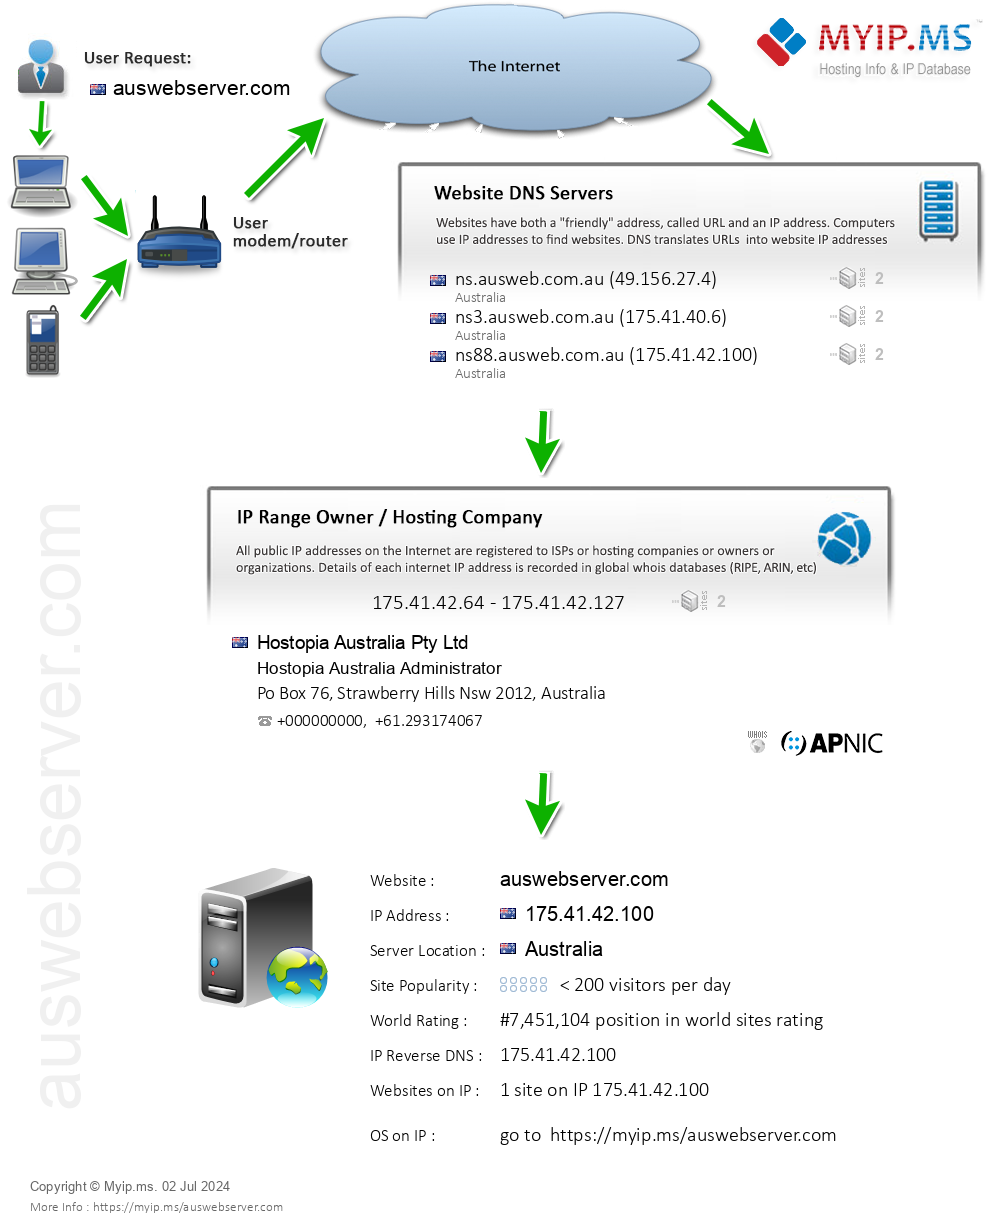 Auswebserver.com - Website Hosting Visual IP Diagram